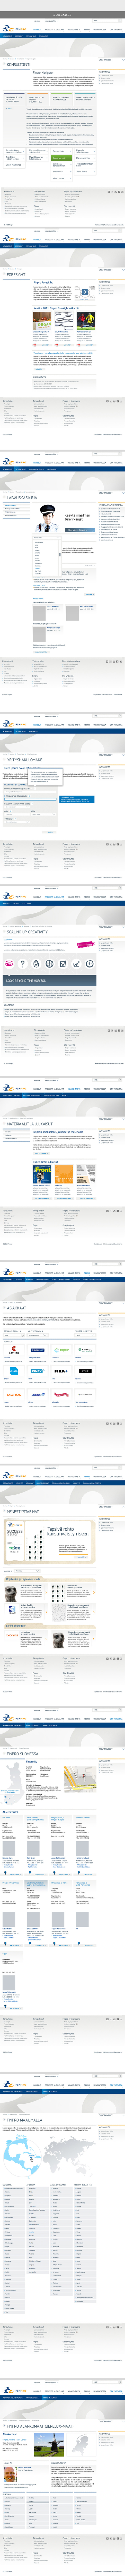 Finpro website 2011-2013